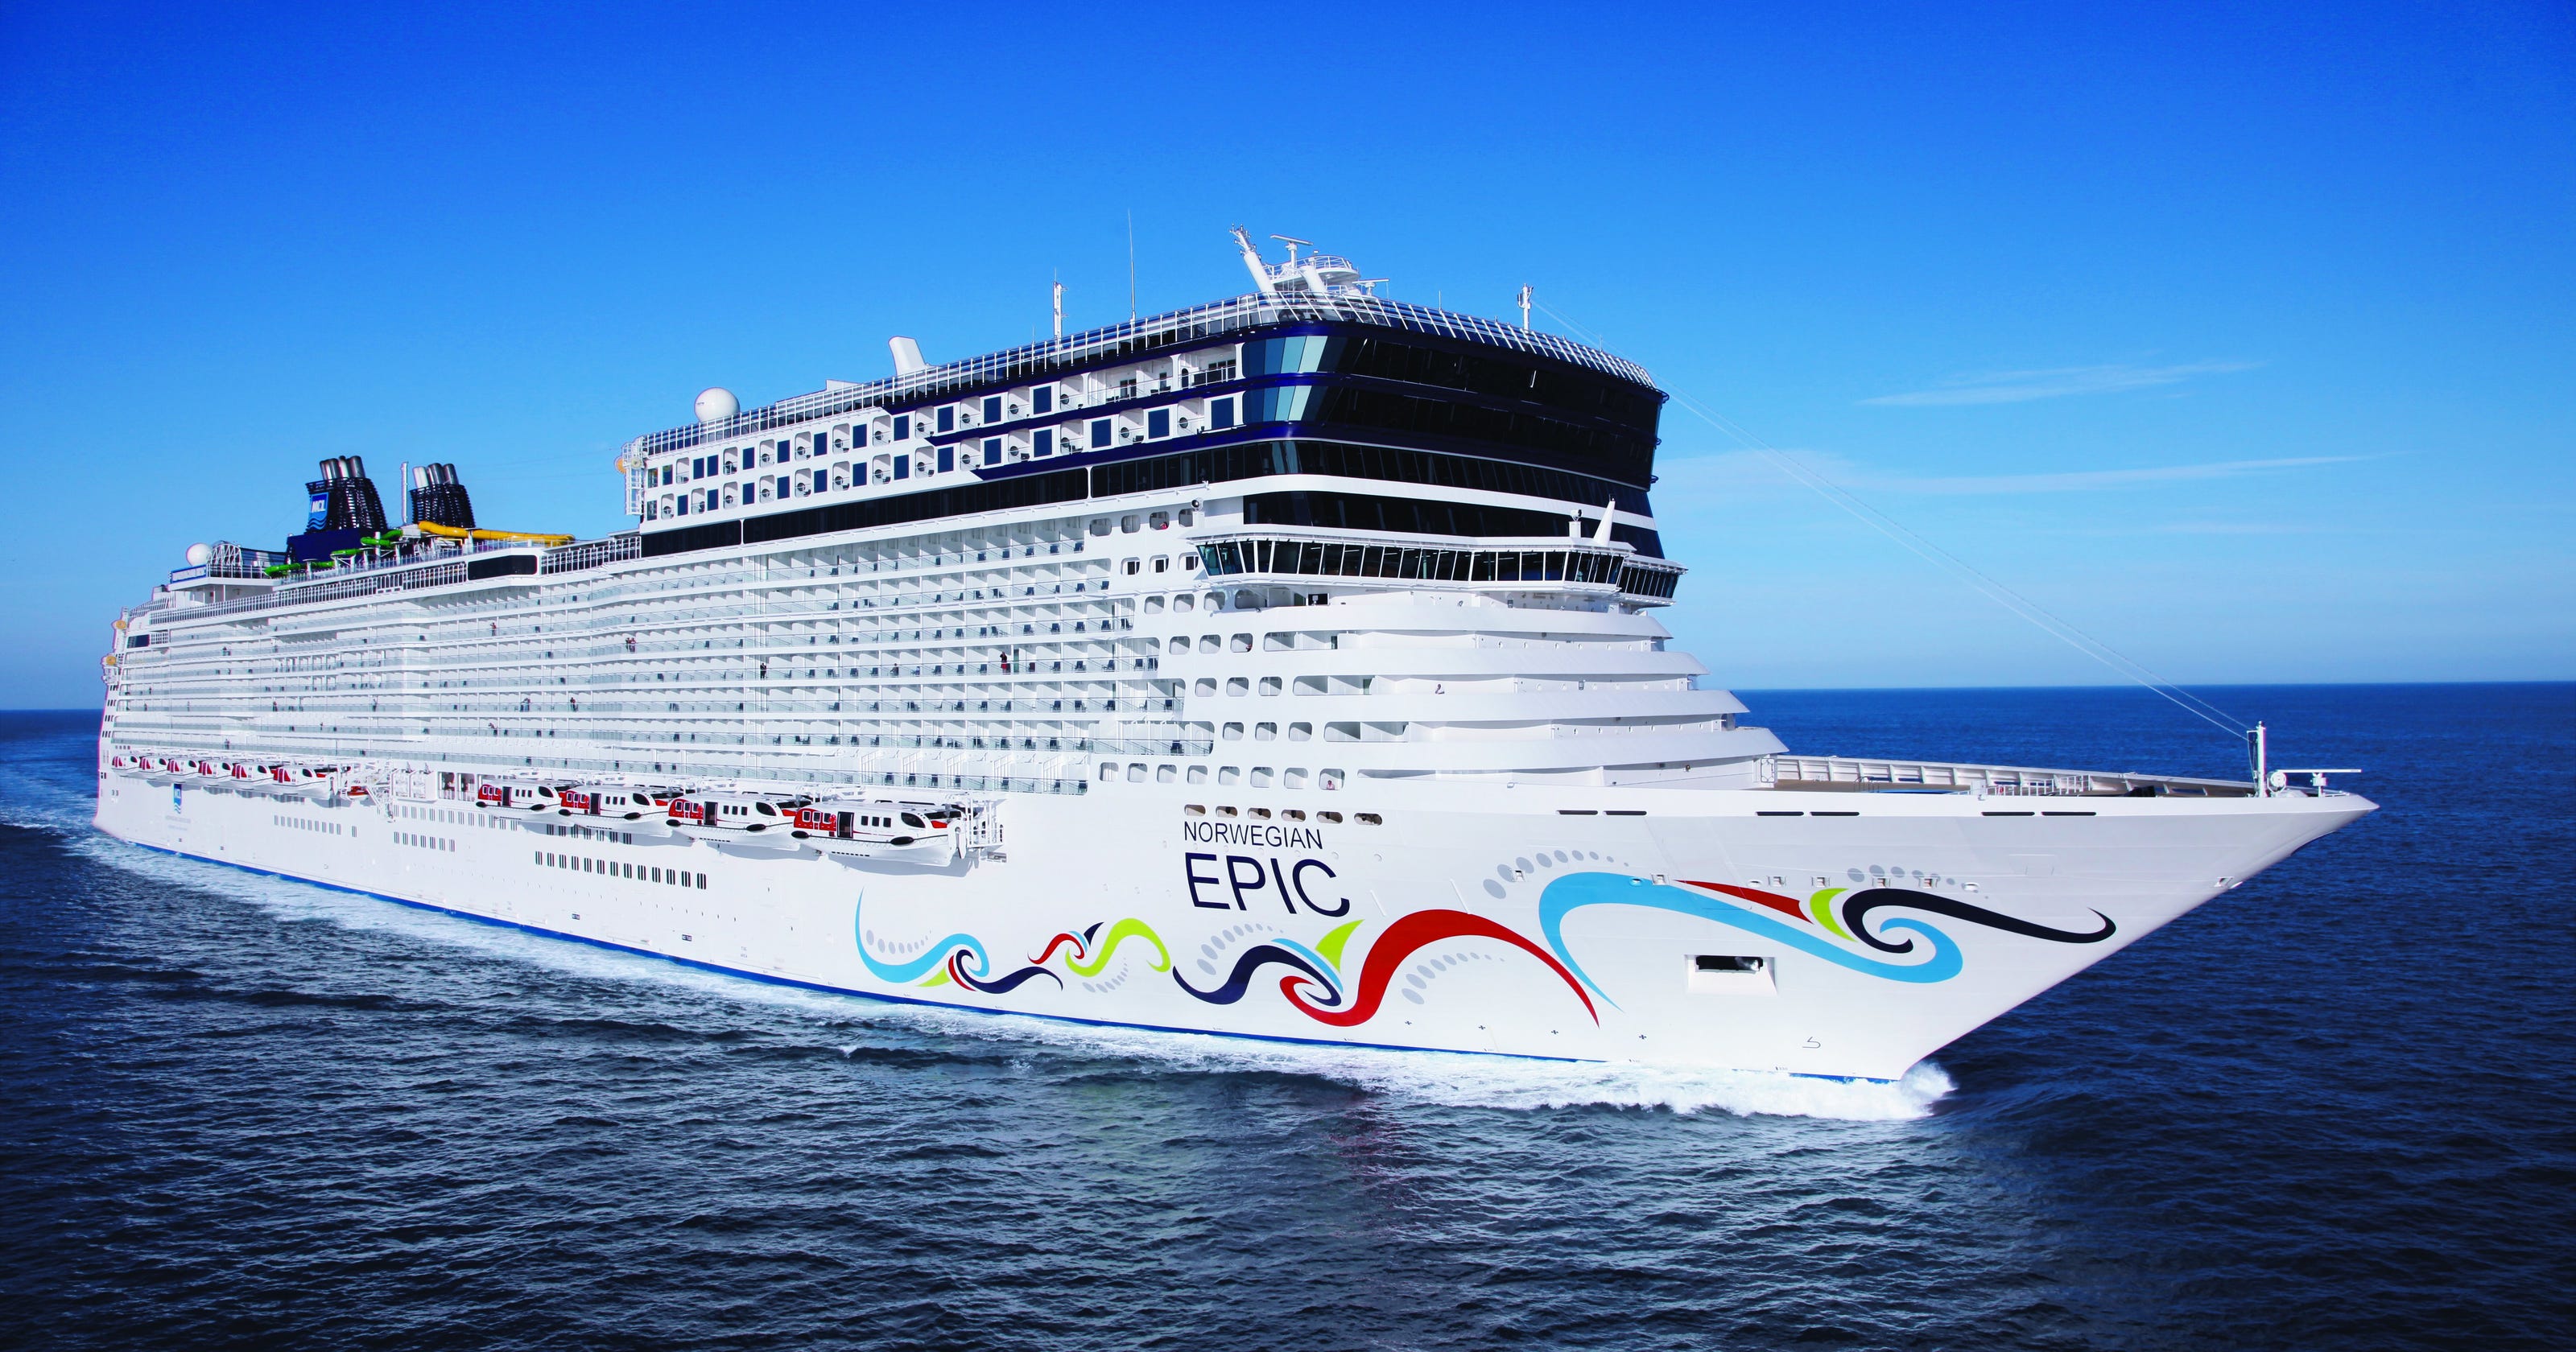 epic cruise boat